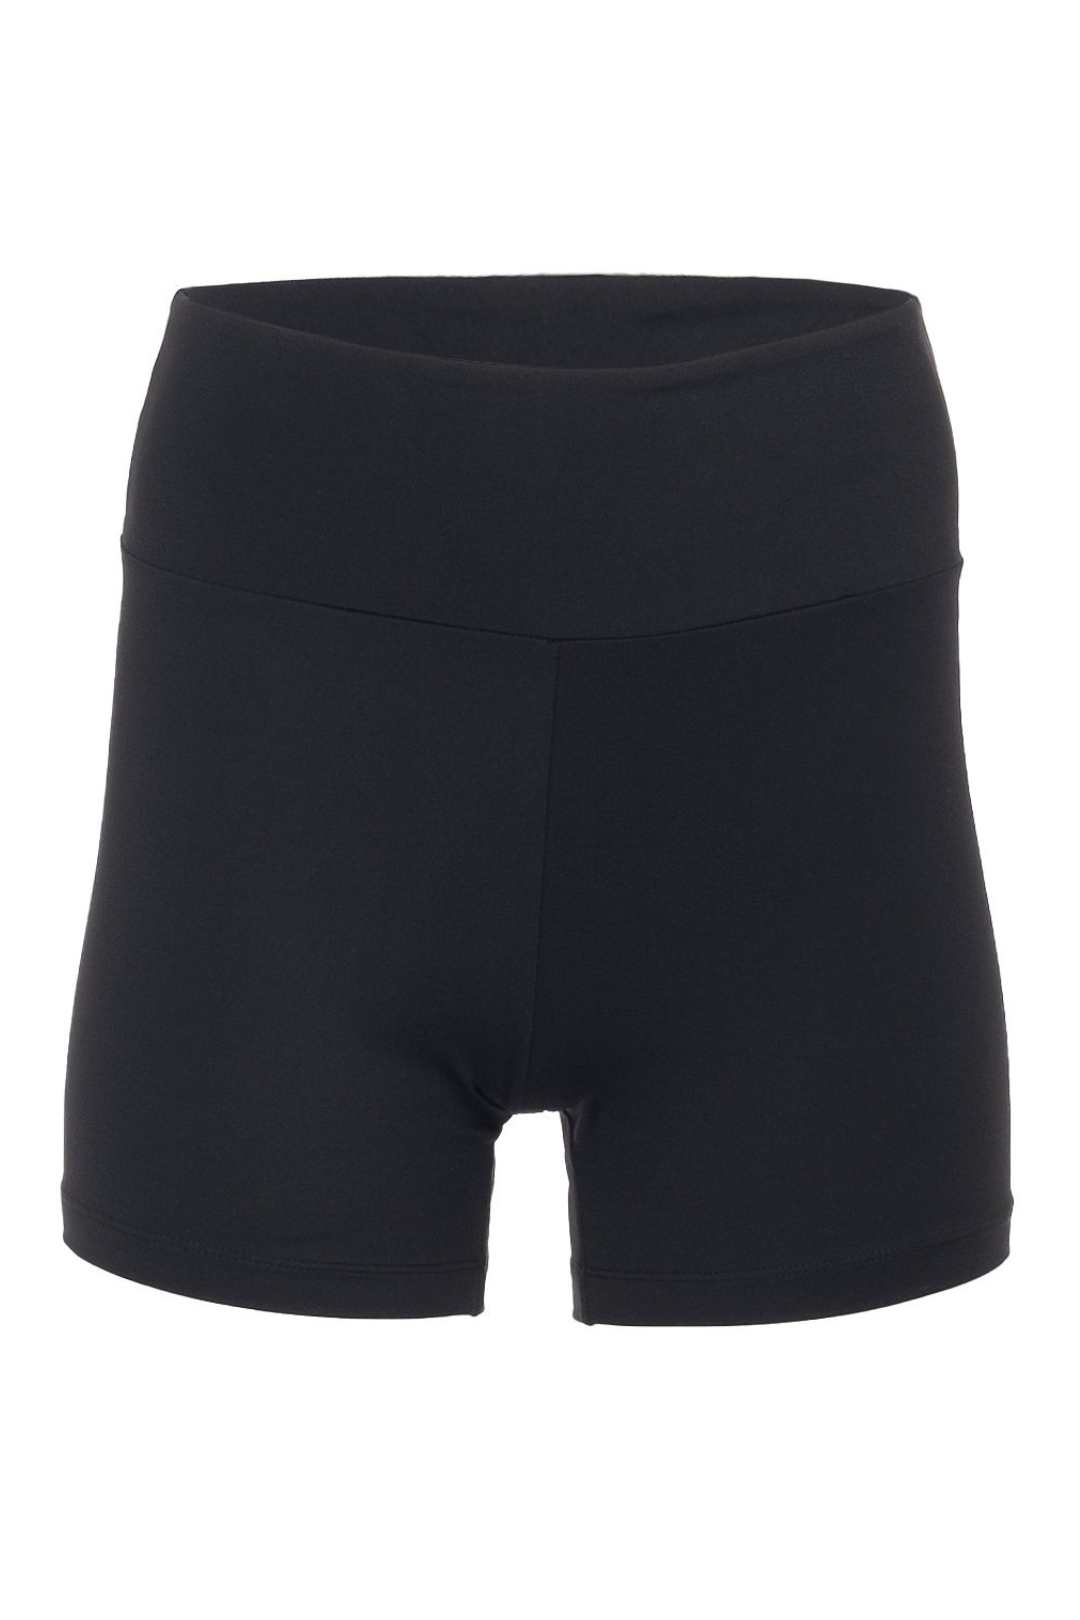 Short black shaping bib shorts | Jordan